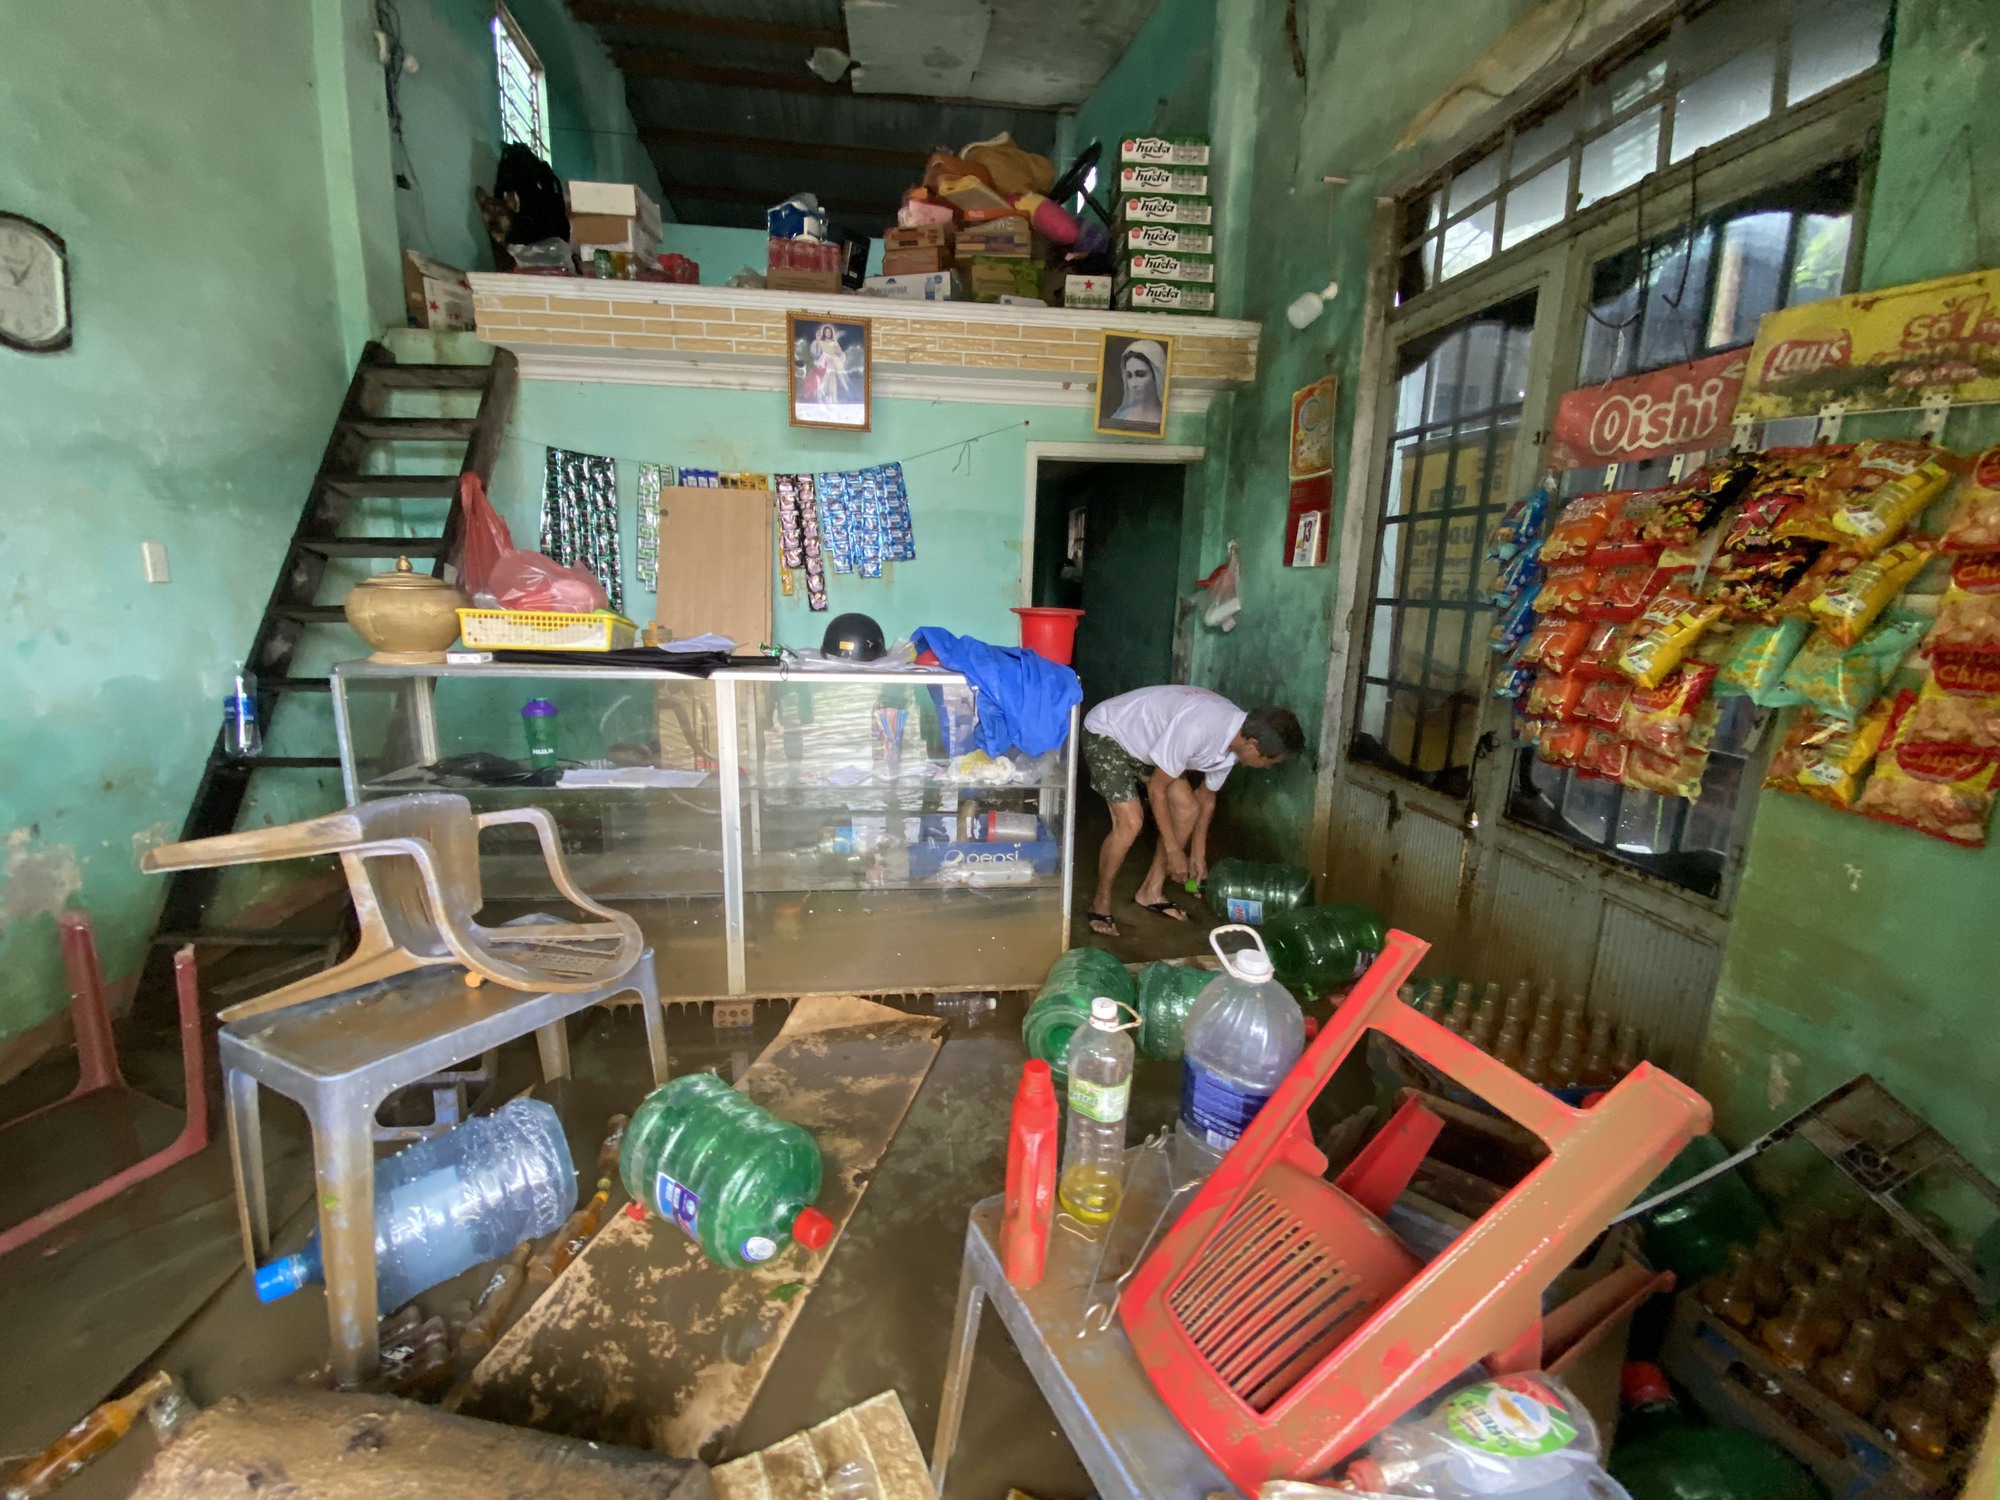 Người dân ở rốn lũ Đà Nẵng tất tả dọn dẹp nhà cửa sau lũ: 